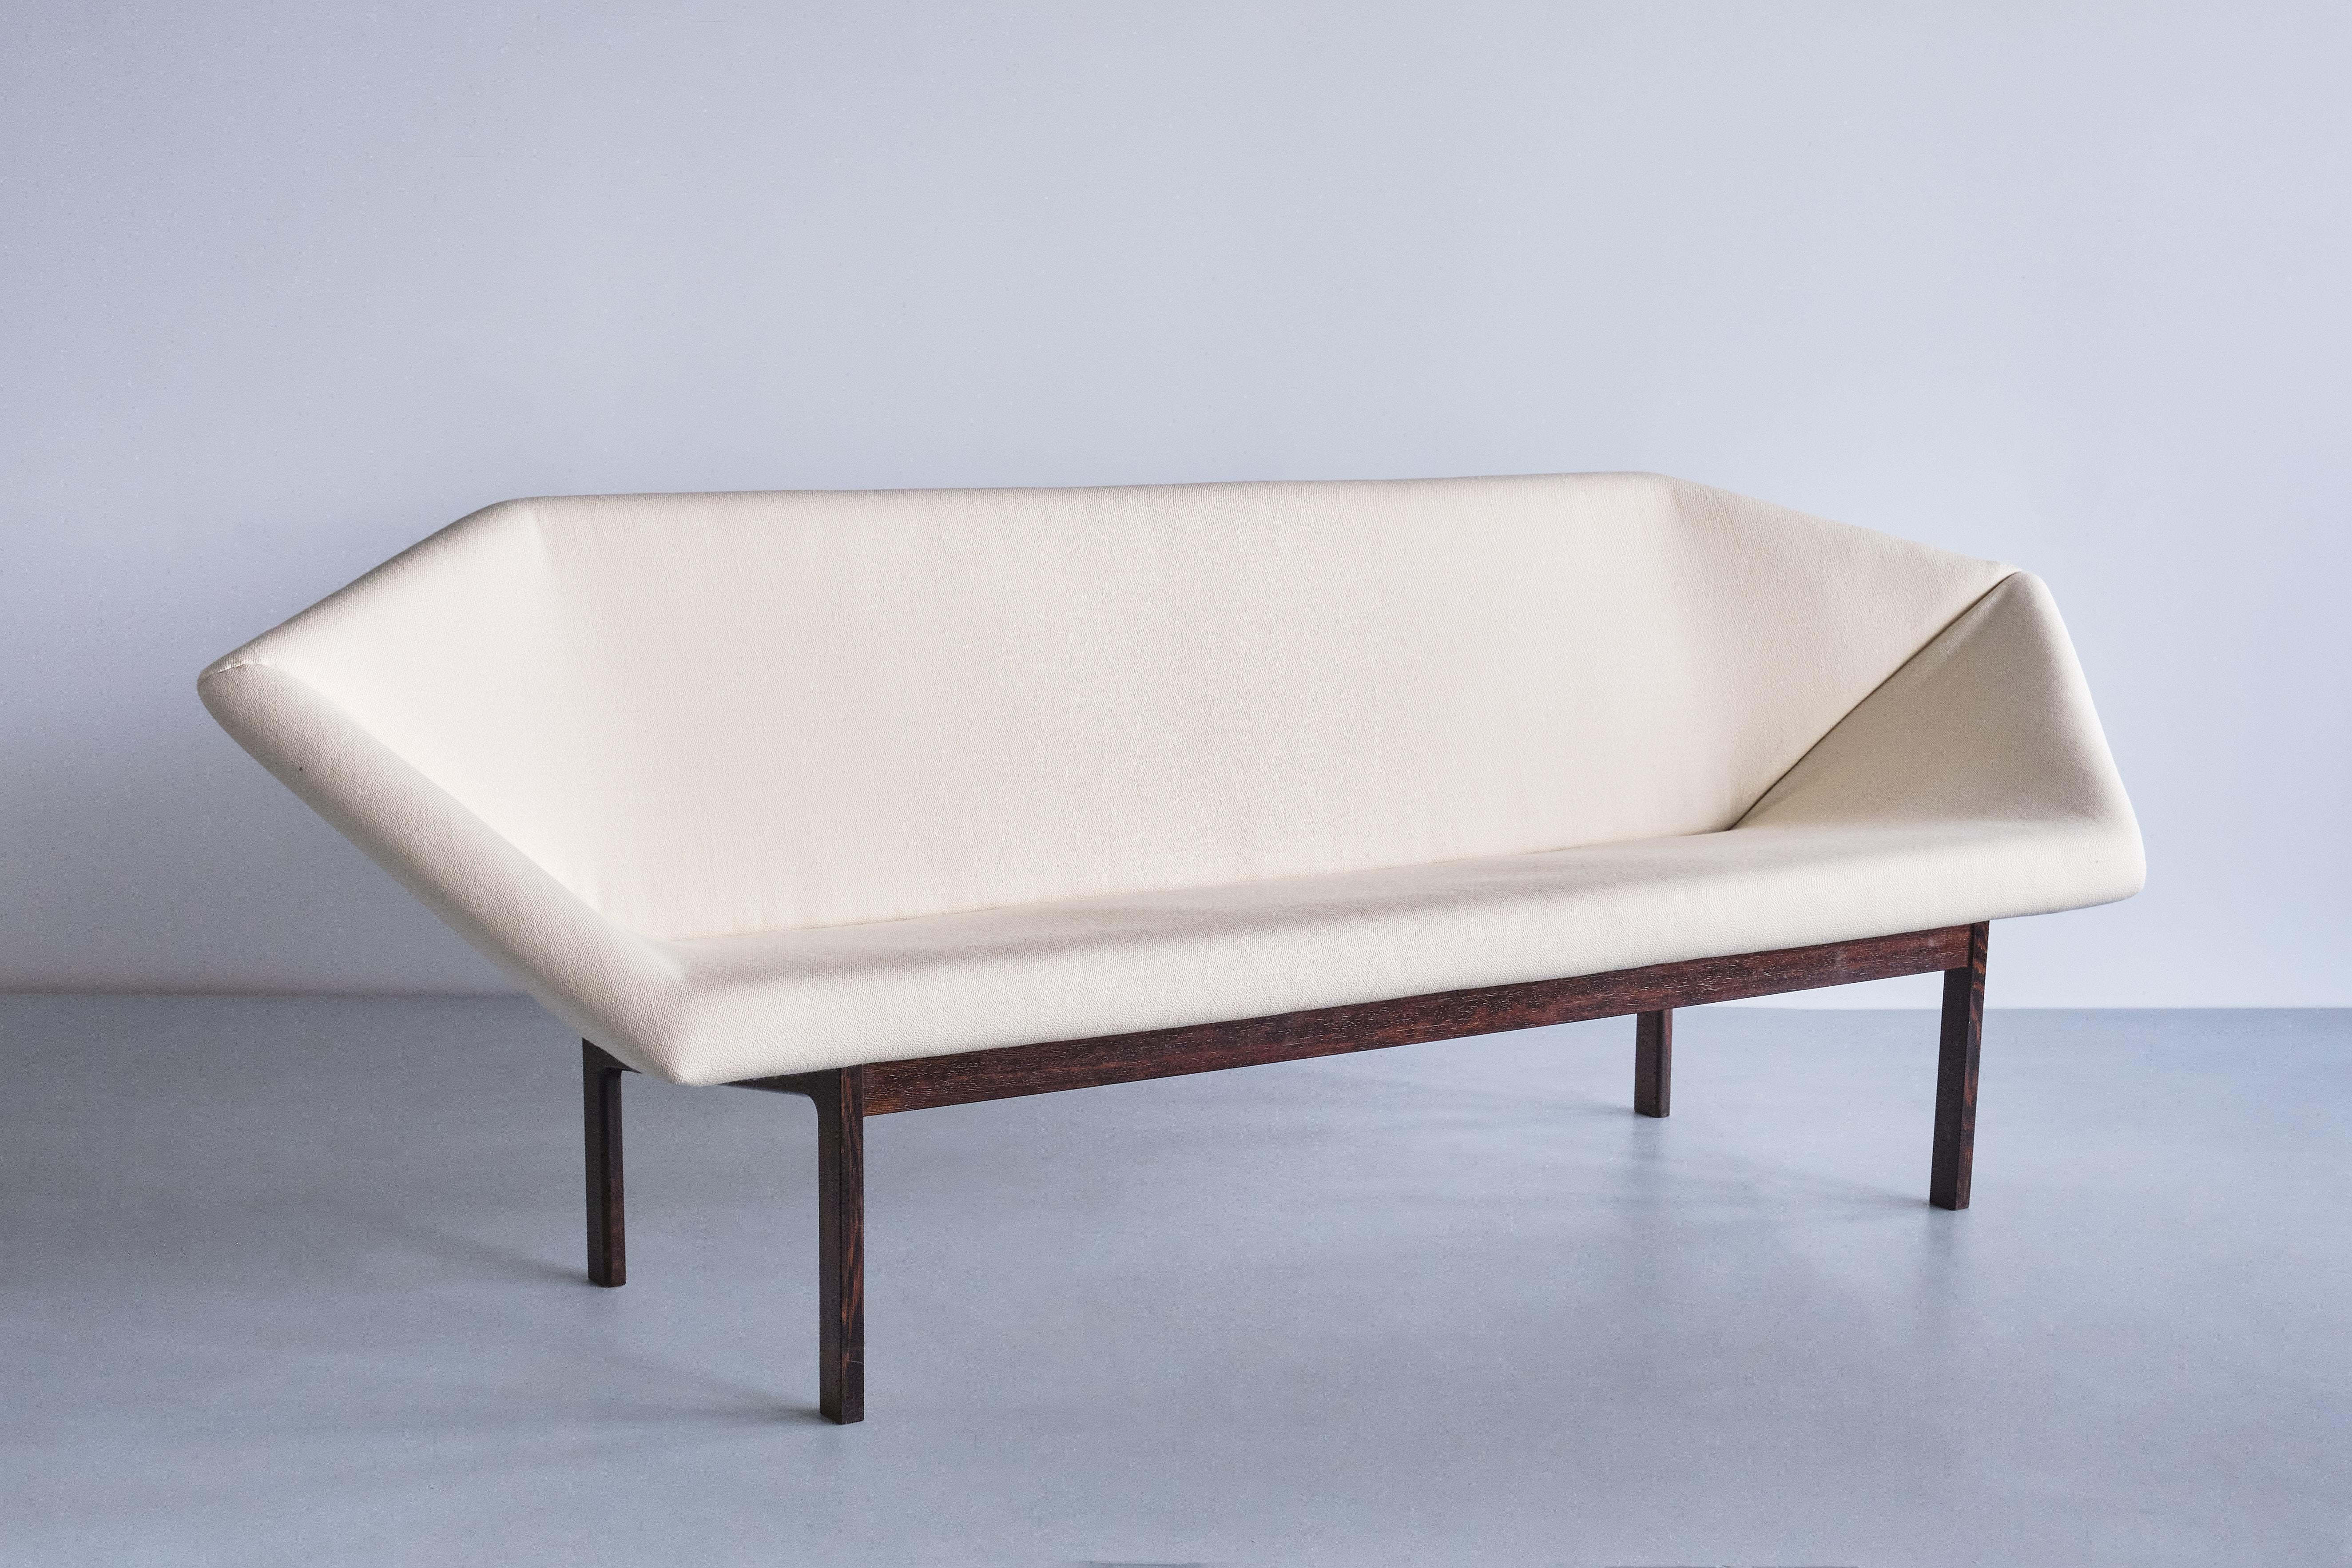 Dieses äußerst seltene Sofa namens Prisma wurde 1963 von Tove & Edvard Kindt-Larsen entworfen. Er wurde von dem Tischler Ludvig Pontoppidan in Dänemark hergestellt.

Das klare Design wird durch die längliche, geometrische Form der gepolsterten Sitz-